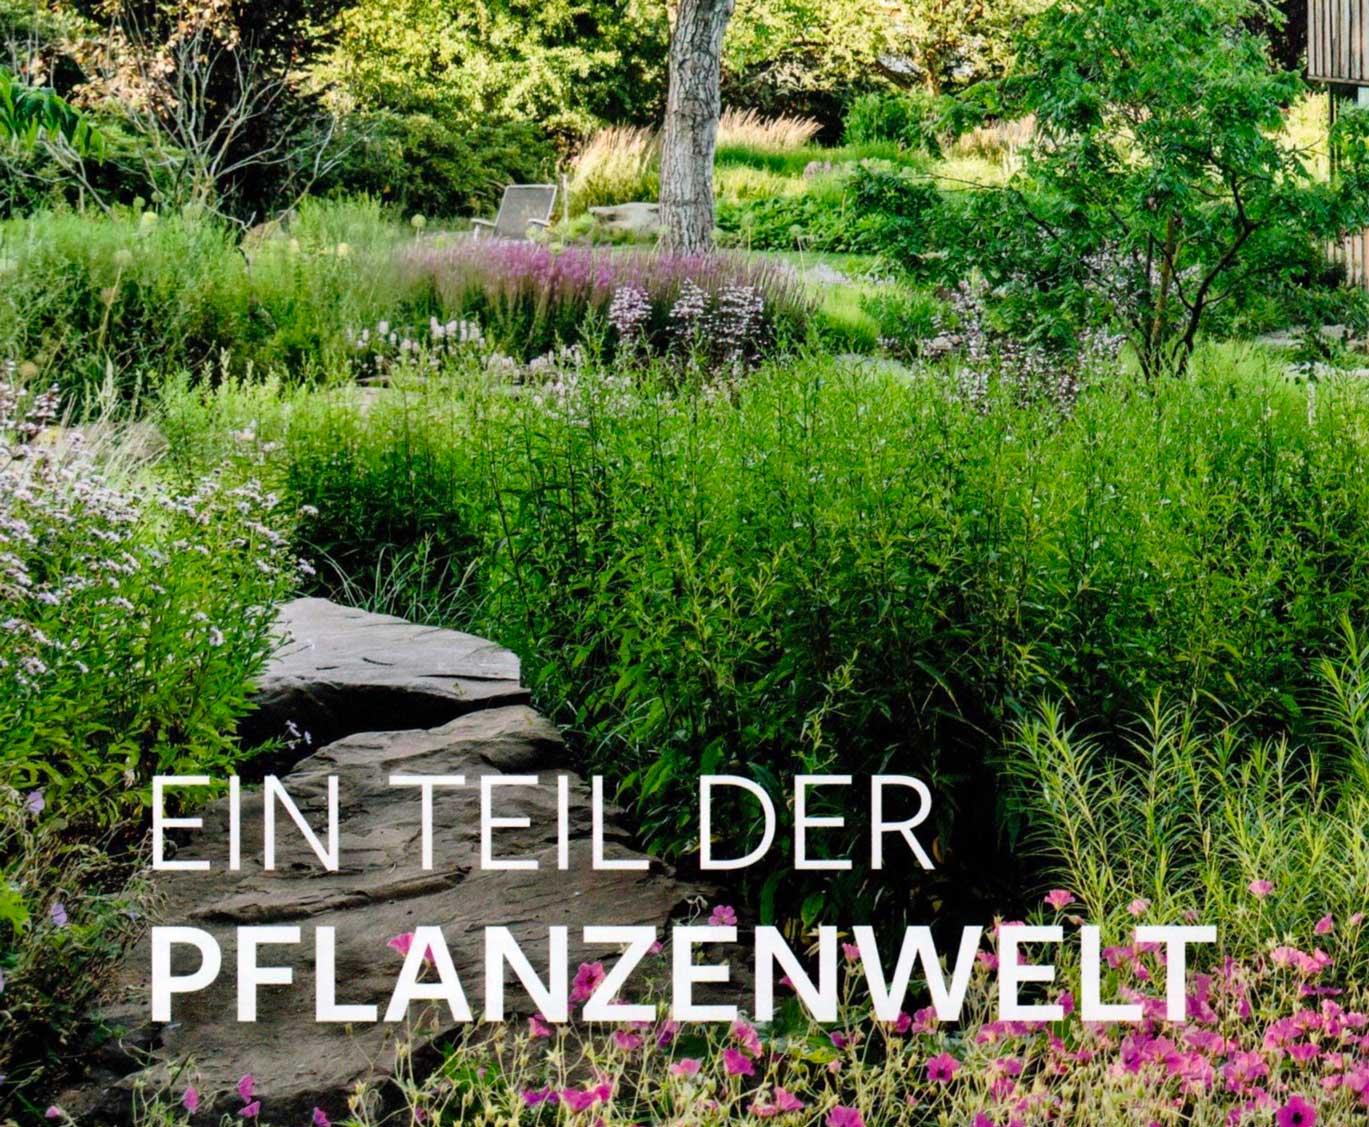 Farbenfrohes Gartenbild mit Titel "Ein Teil der Pflanzenwelt"